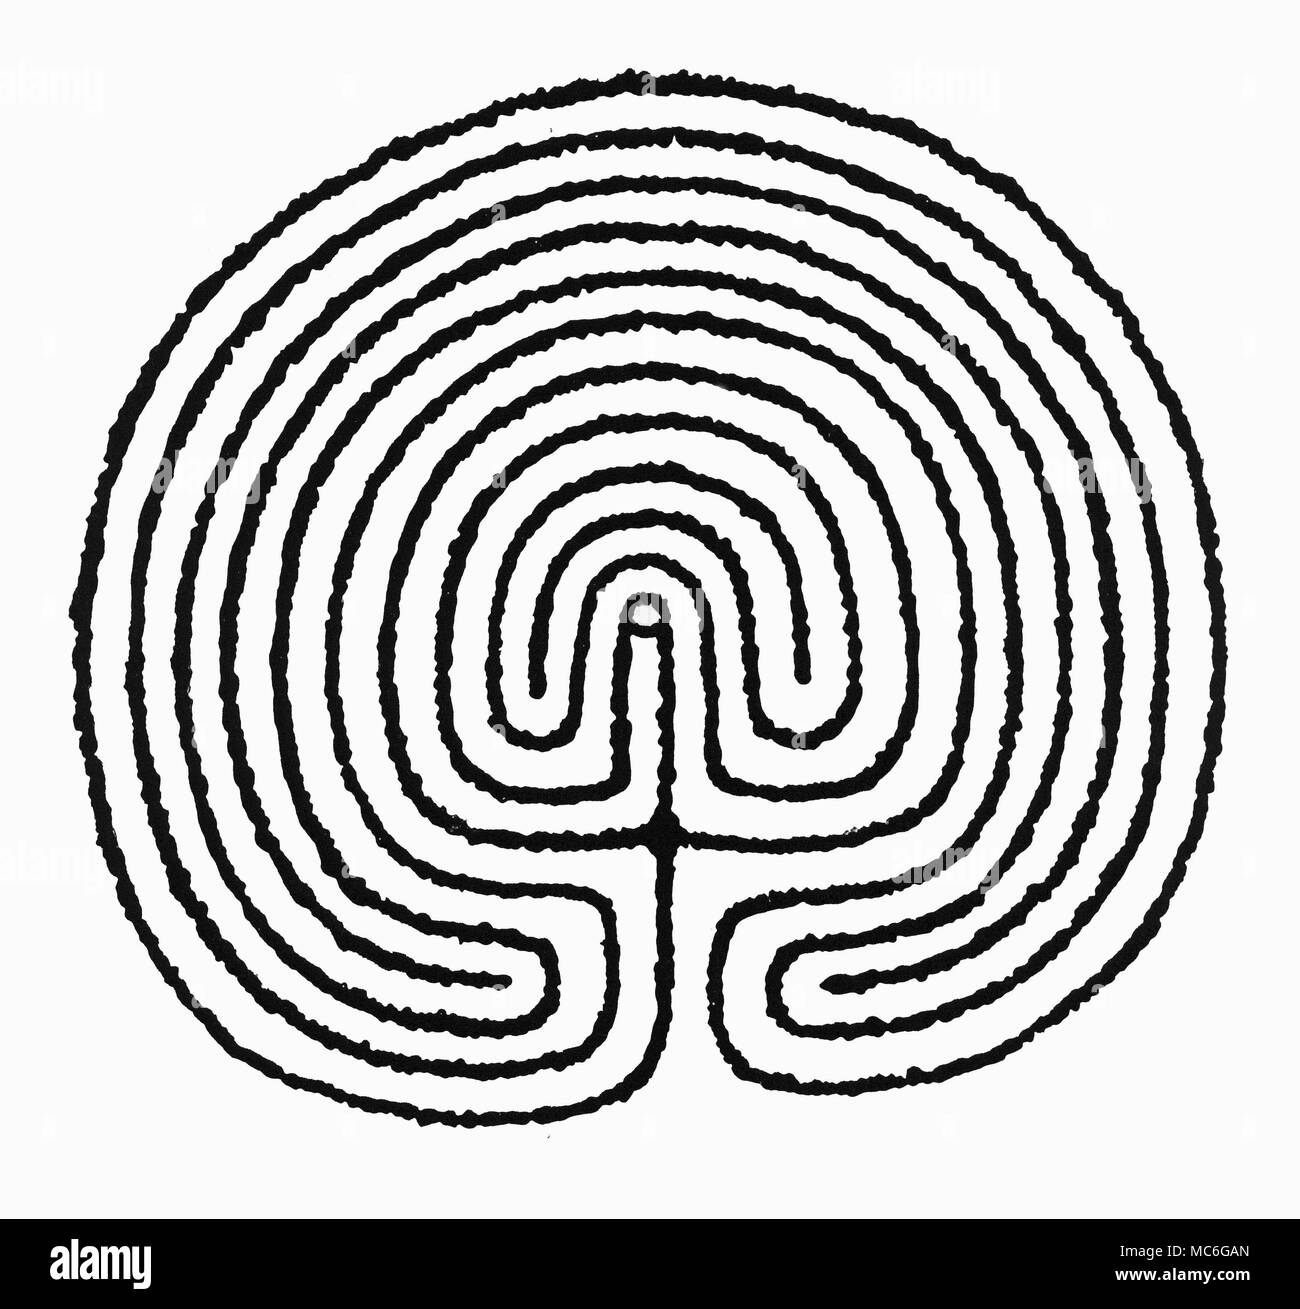 Labyrinthe - WISLEY LABYRINTH Dieser Grundriss der Wisley Labyrinth offenbart es eine relativ normale Labyrinth zu Design, in Gärten und Felszeichnungen verwendet. Es ist vermutlich mittelalterlichen Ursprungs, aber im Gegensatz zu der Mehrzahl der mittelalterlichen Labyrinthe, dies ist eine, in der es möglich ist, sich selbst zu verlieren: Es ist also nicht nur eine Bahn, die unweigerlich zu einem einzigen Zentrum führt. Stockfoto